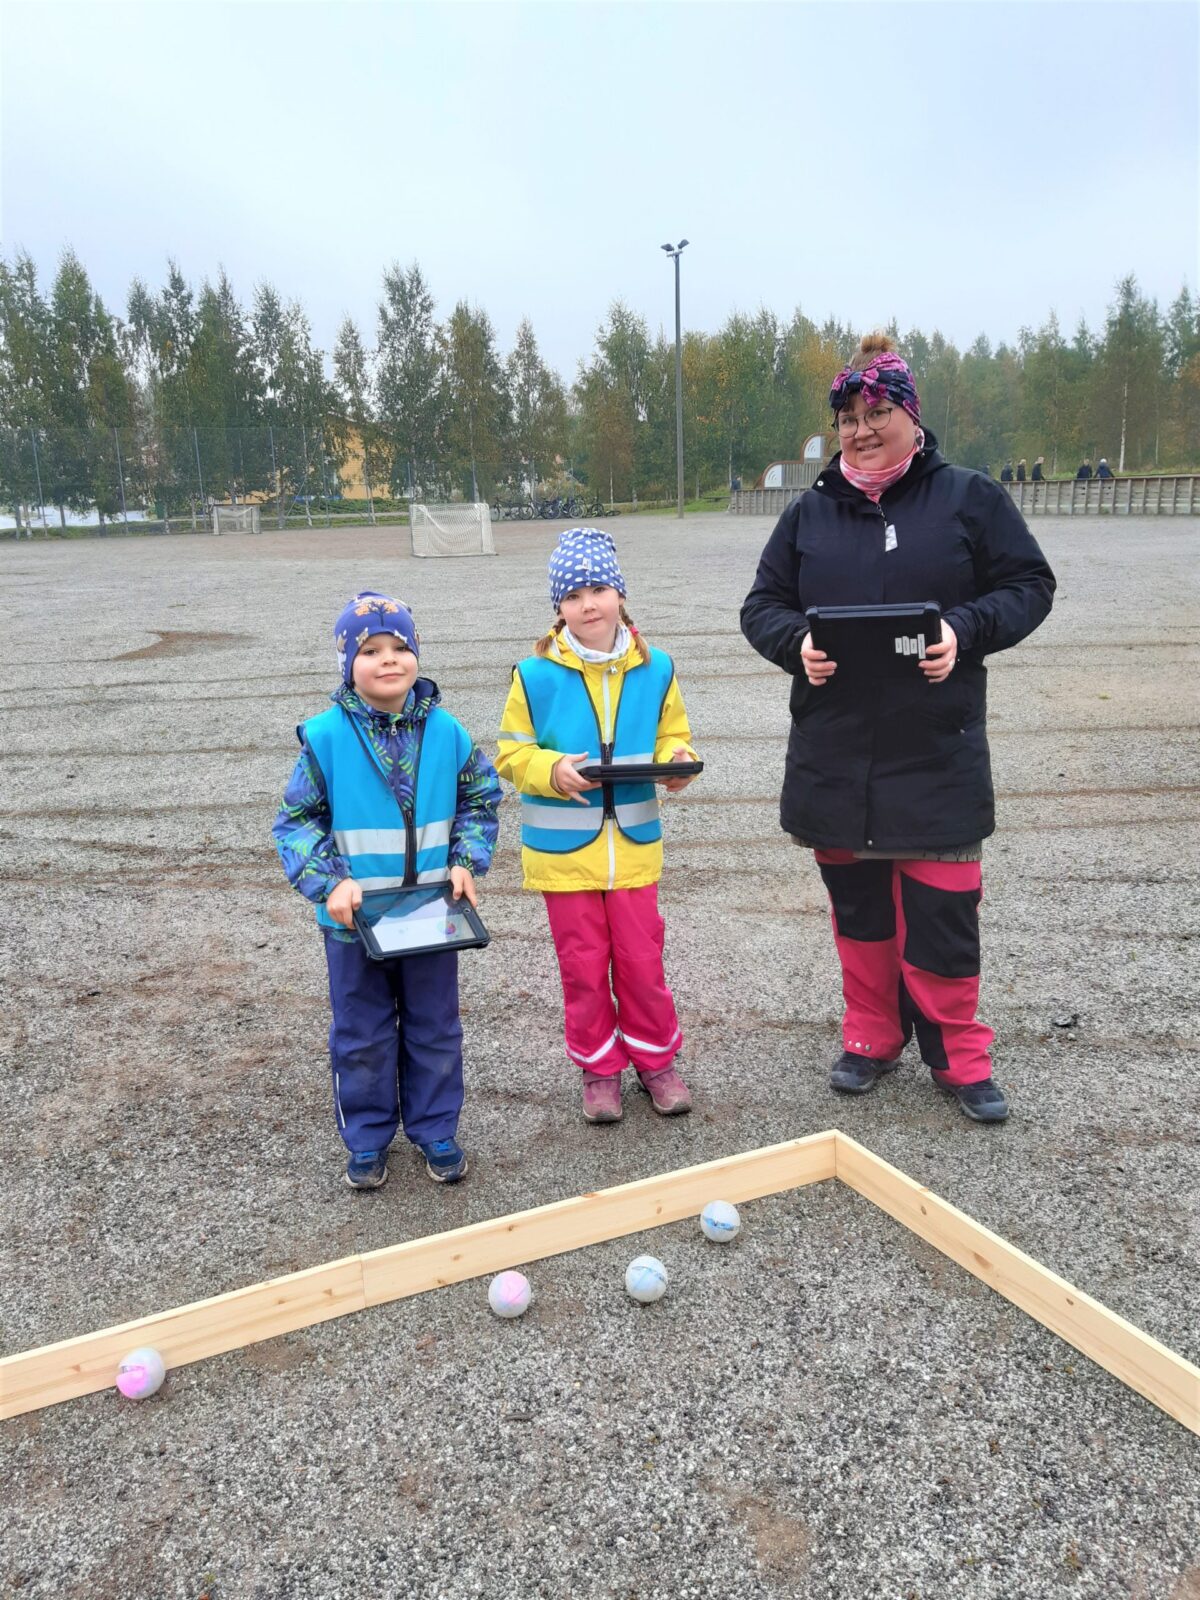 Opettaja ja kaksi lasta ohjelmoivat ulkona Sphero-robottipalloja.